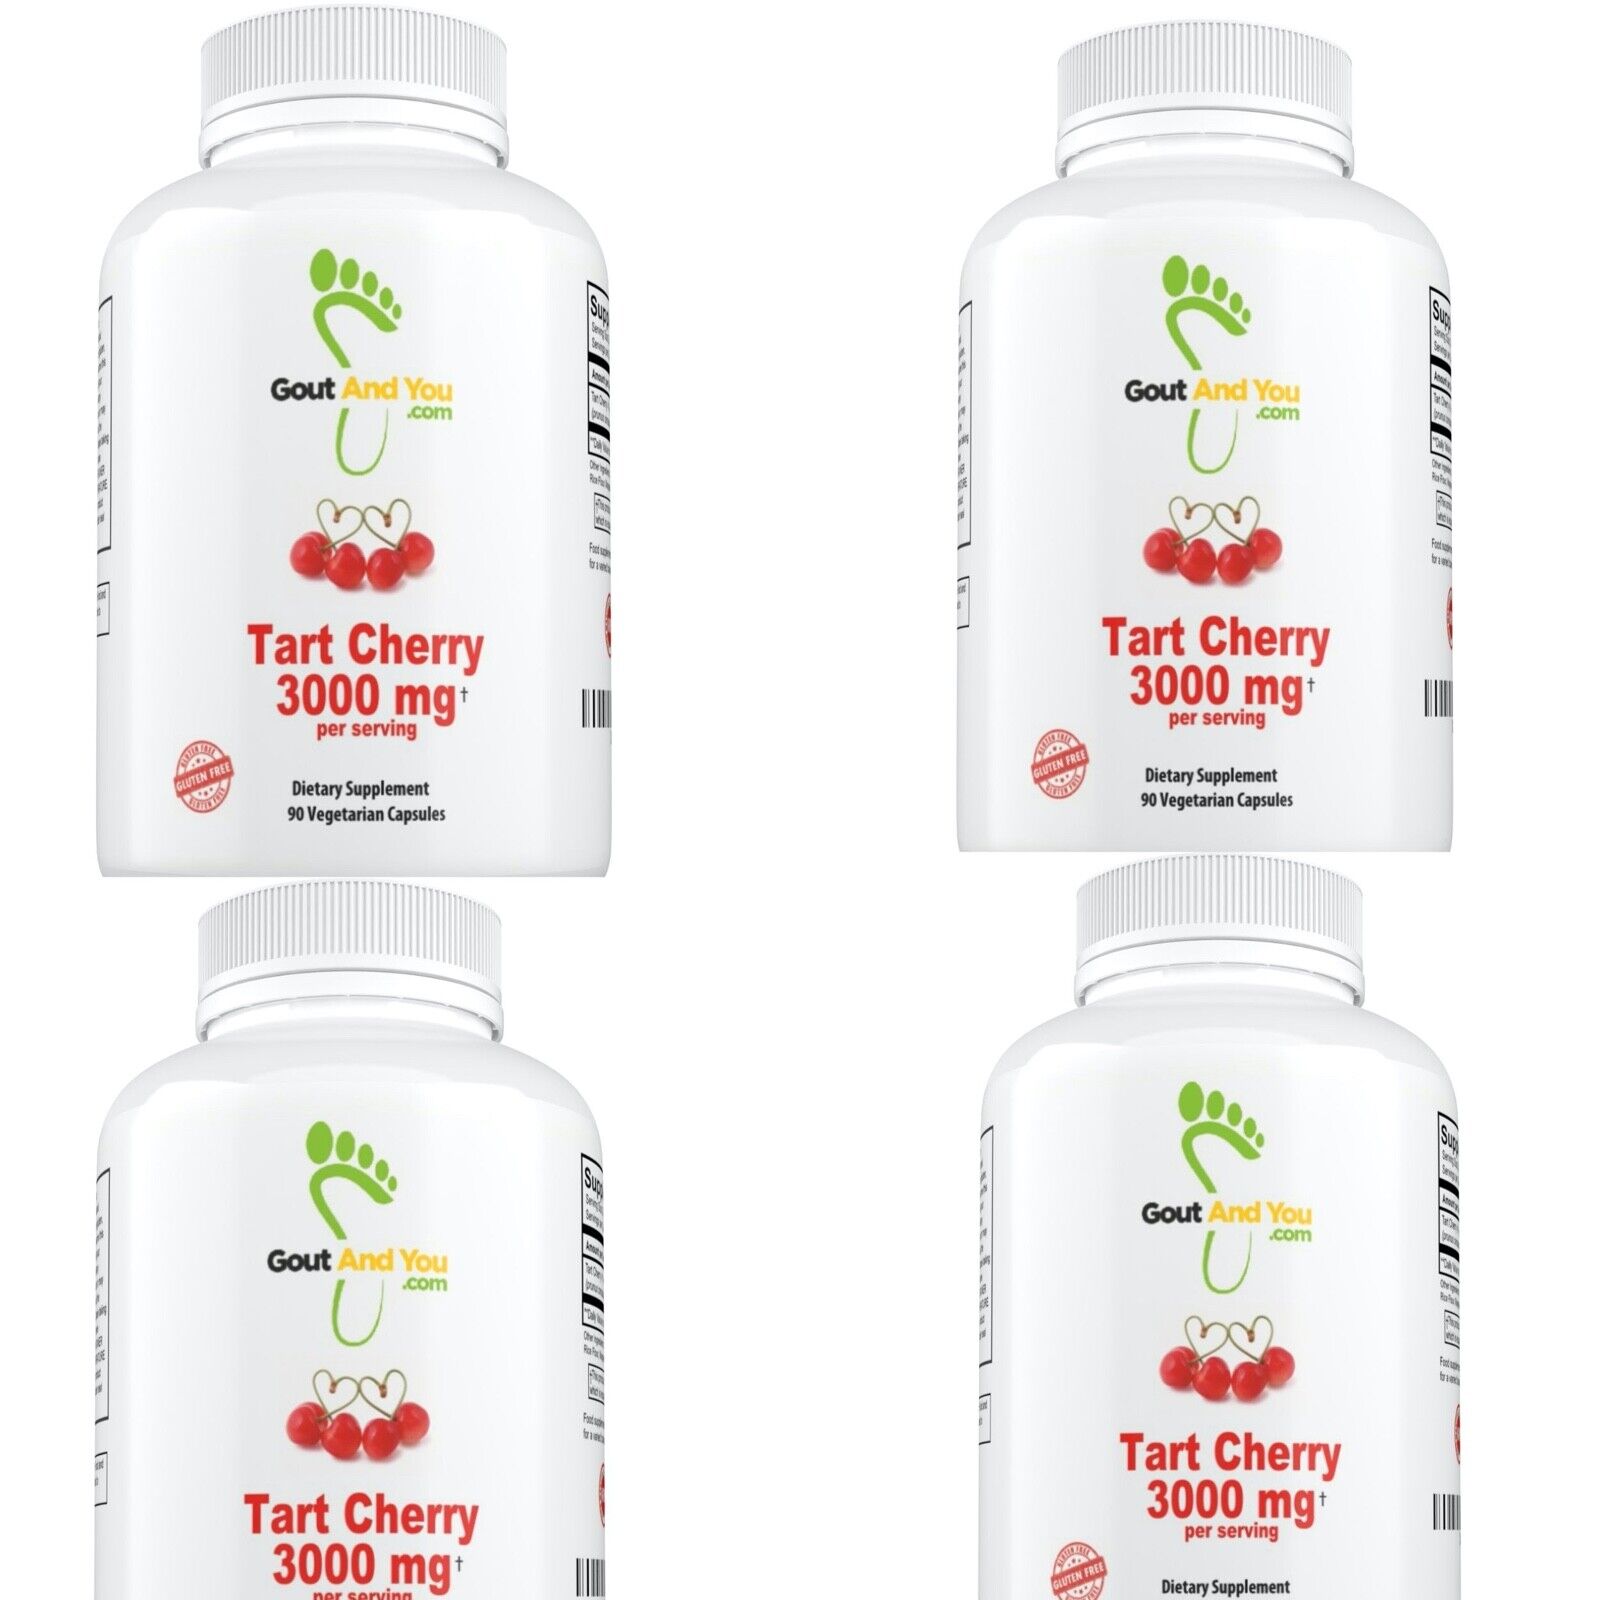 4 Bottles Tart Cherry Extract by GoutandYou.com - 3000 mg - Gluten Free - Vegan